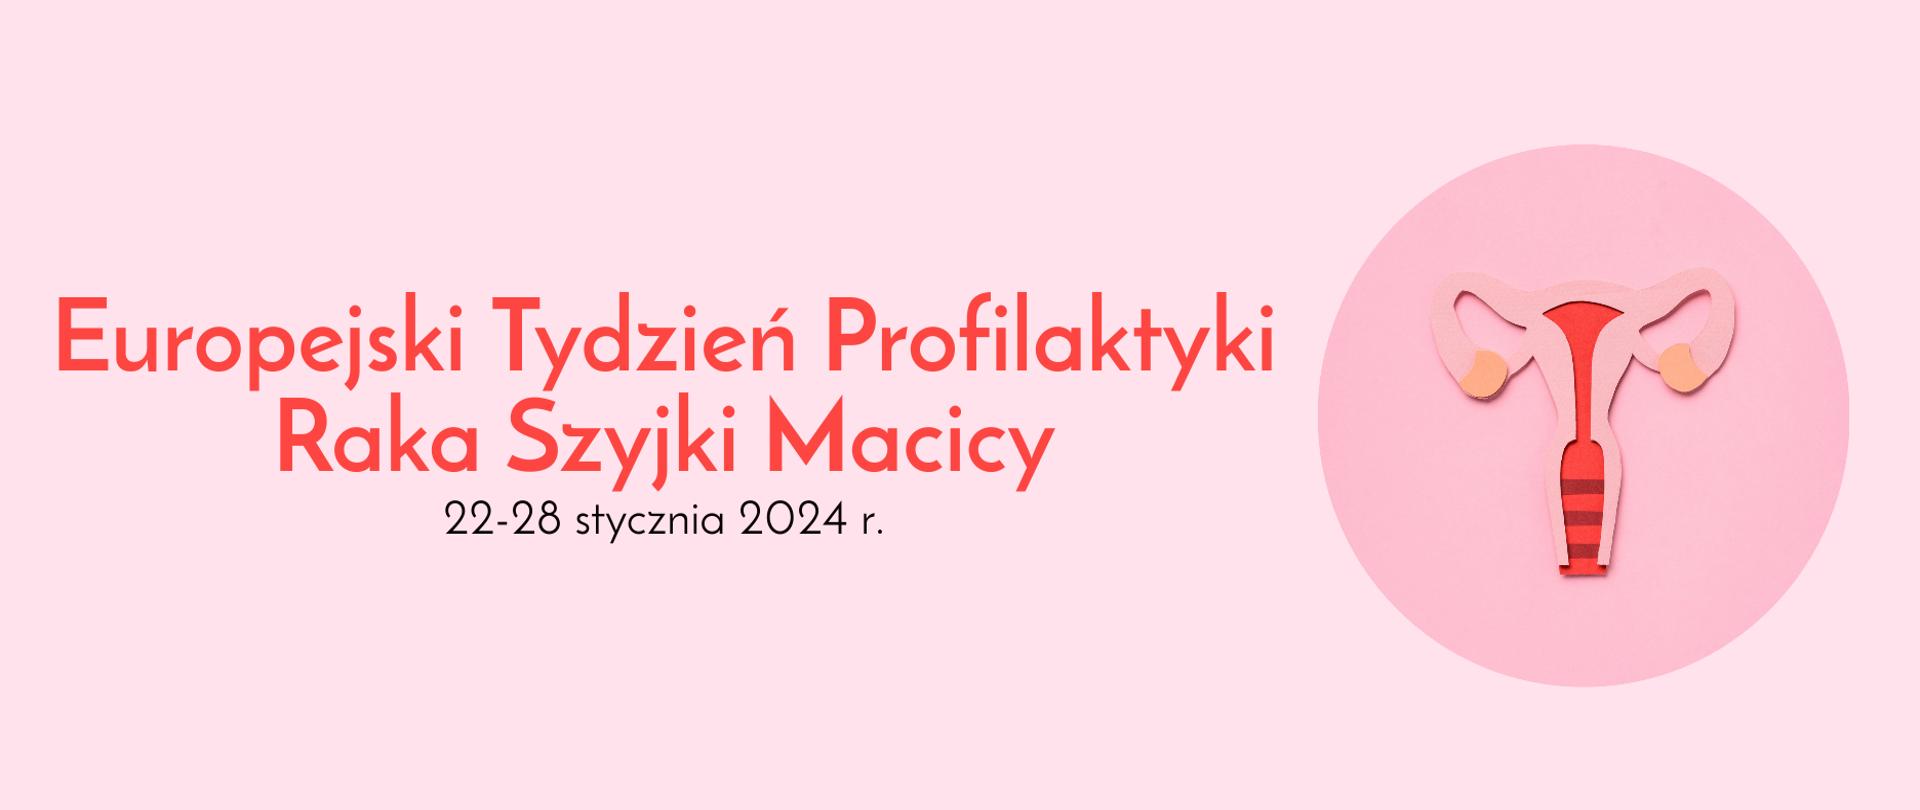 Na grafice jest napis Europejski Tydzień Profilaktyki Raka Szyjki Macicy 22-28 stycznia 2024 r. Obok znajduje się graficzne ujęcie macicy. Tło jest różowe.